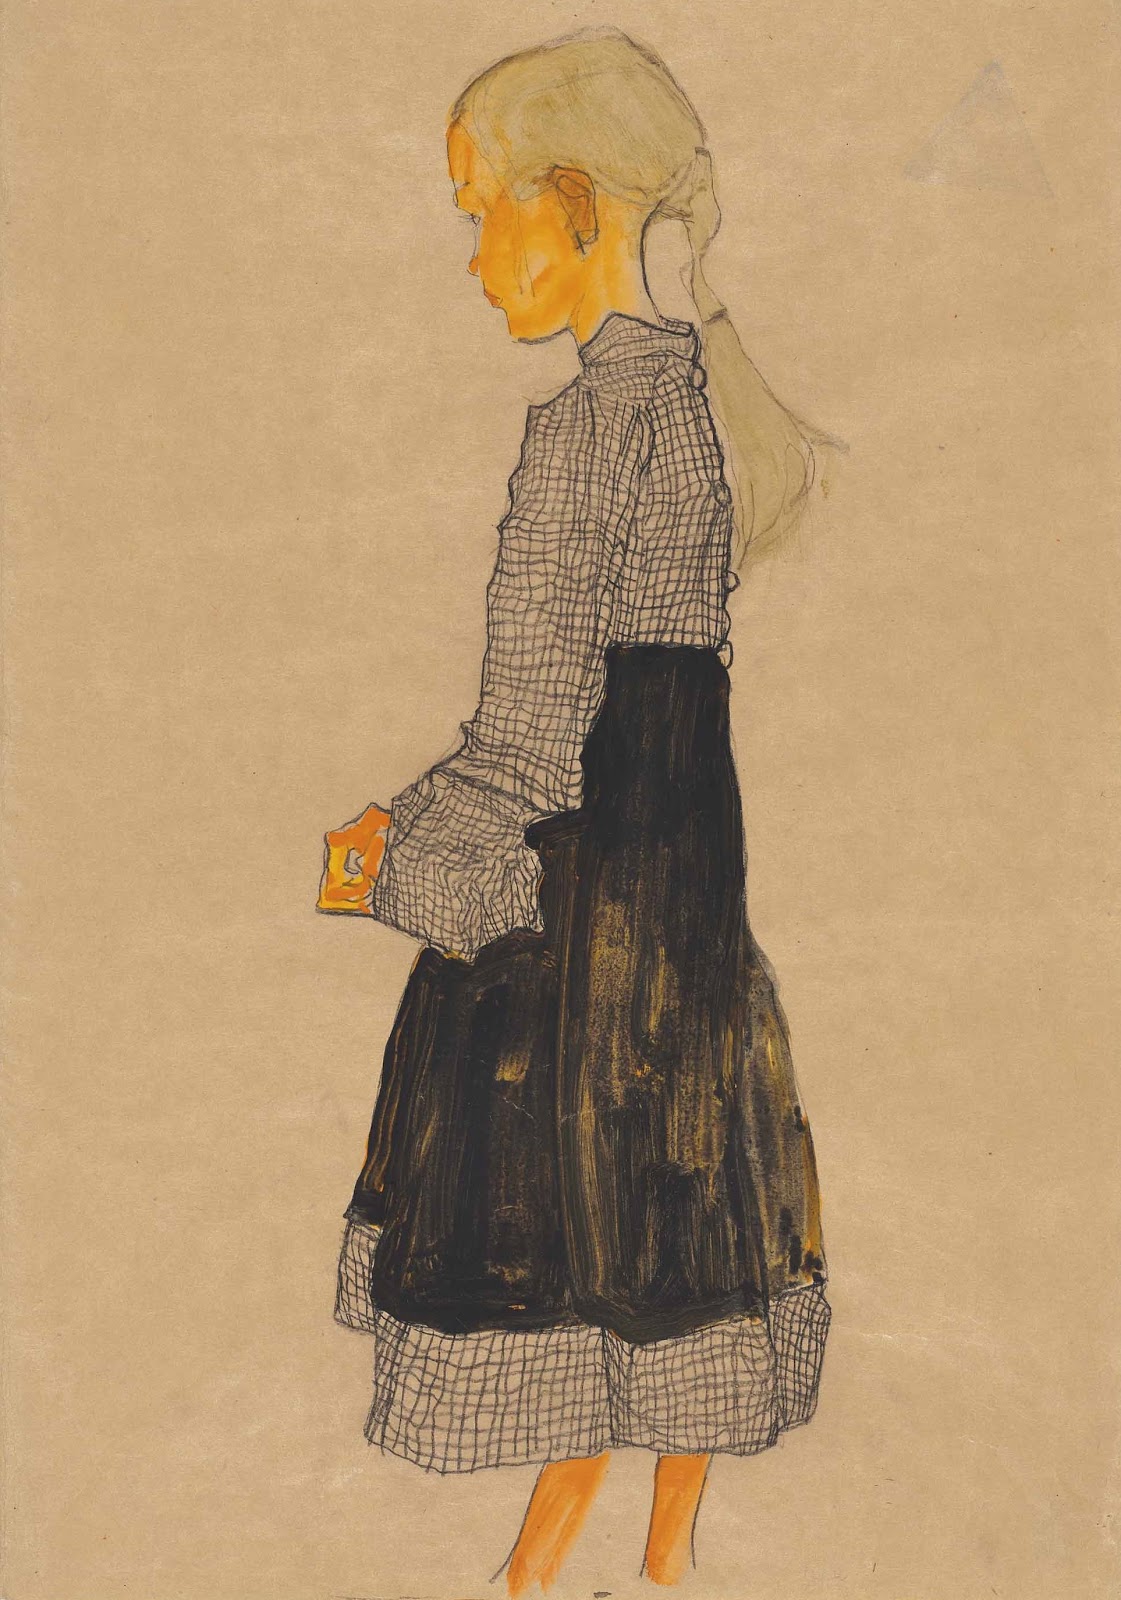 Egon+Schiele-1890-1918 (51).jpg